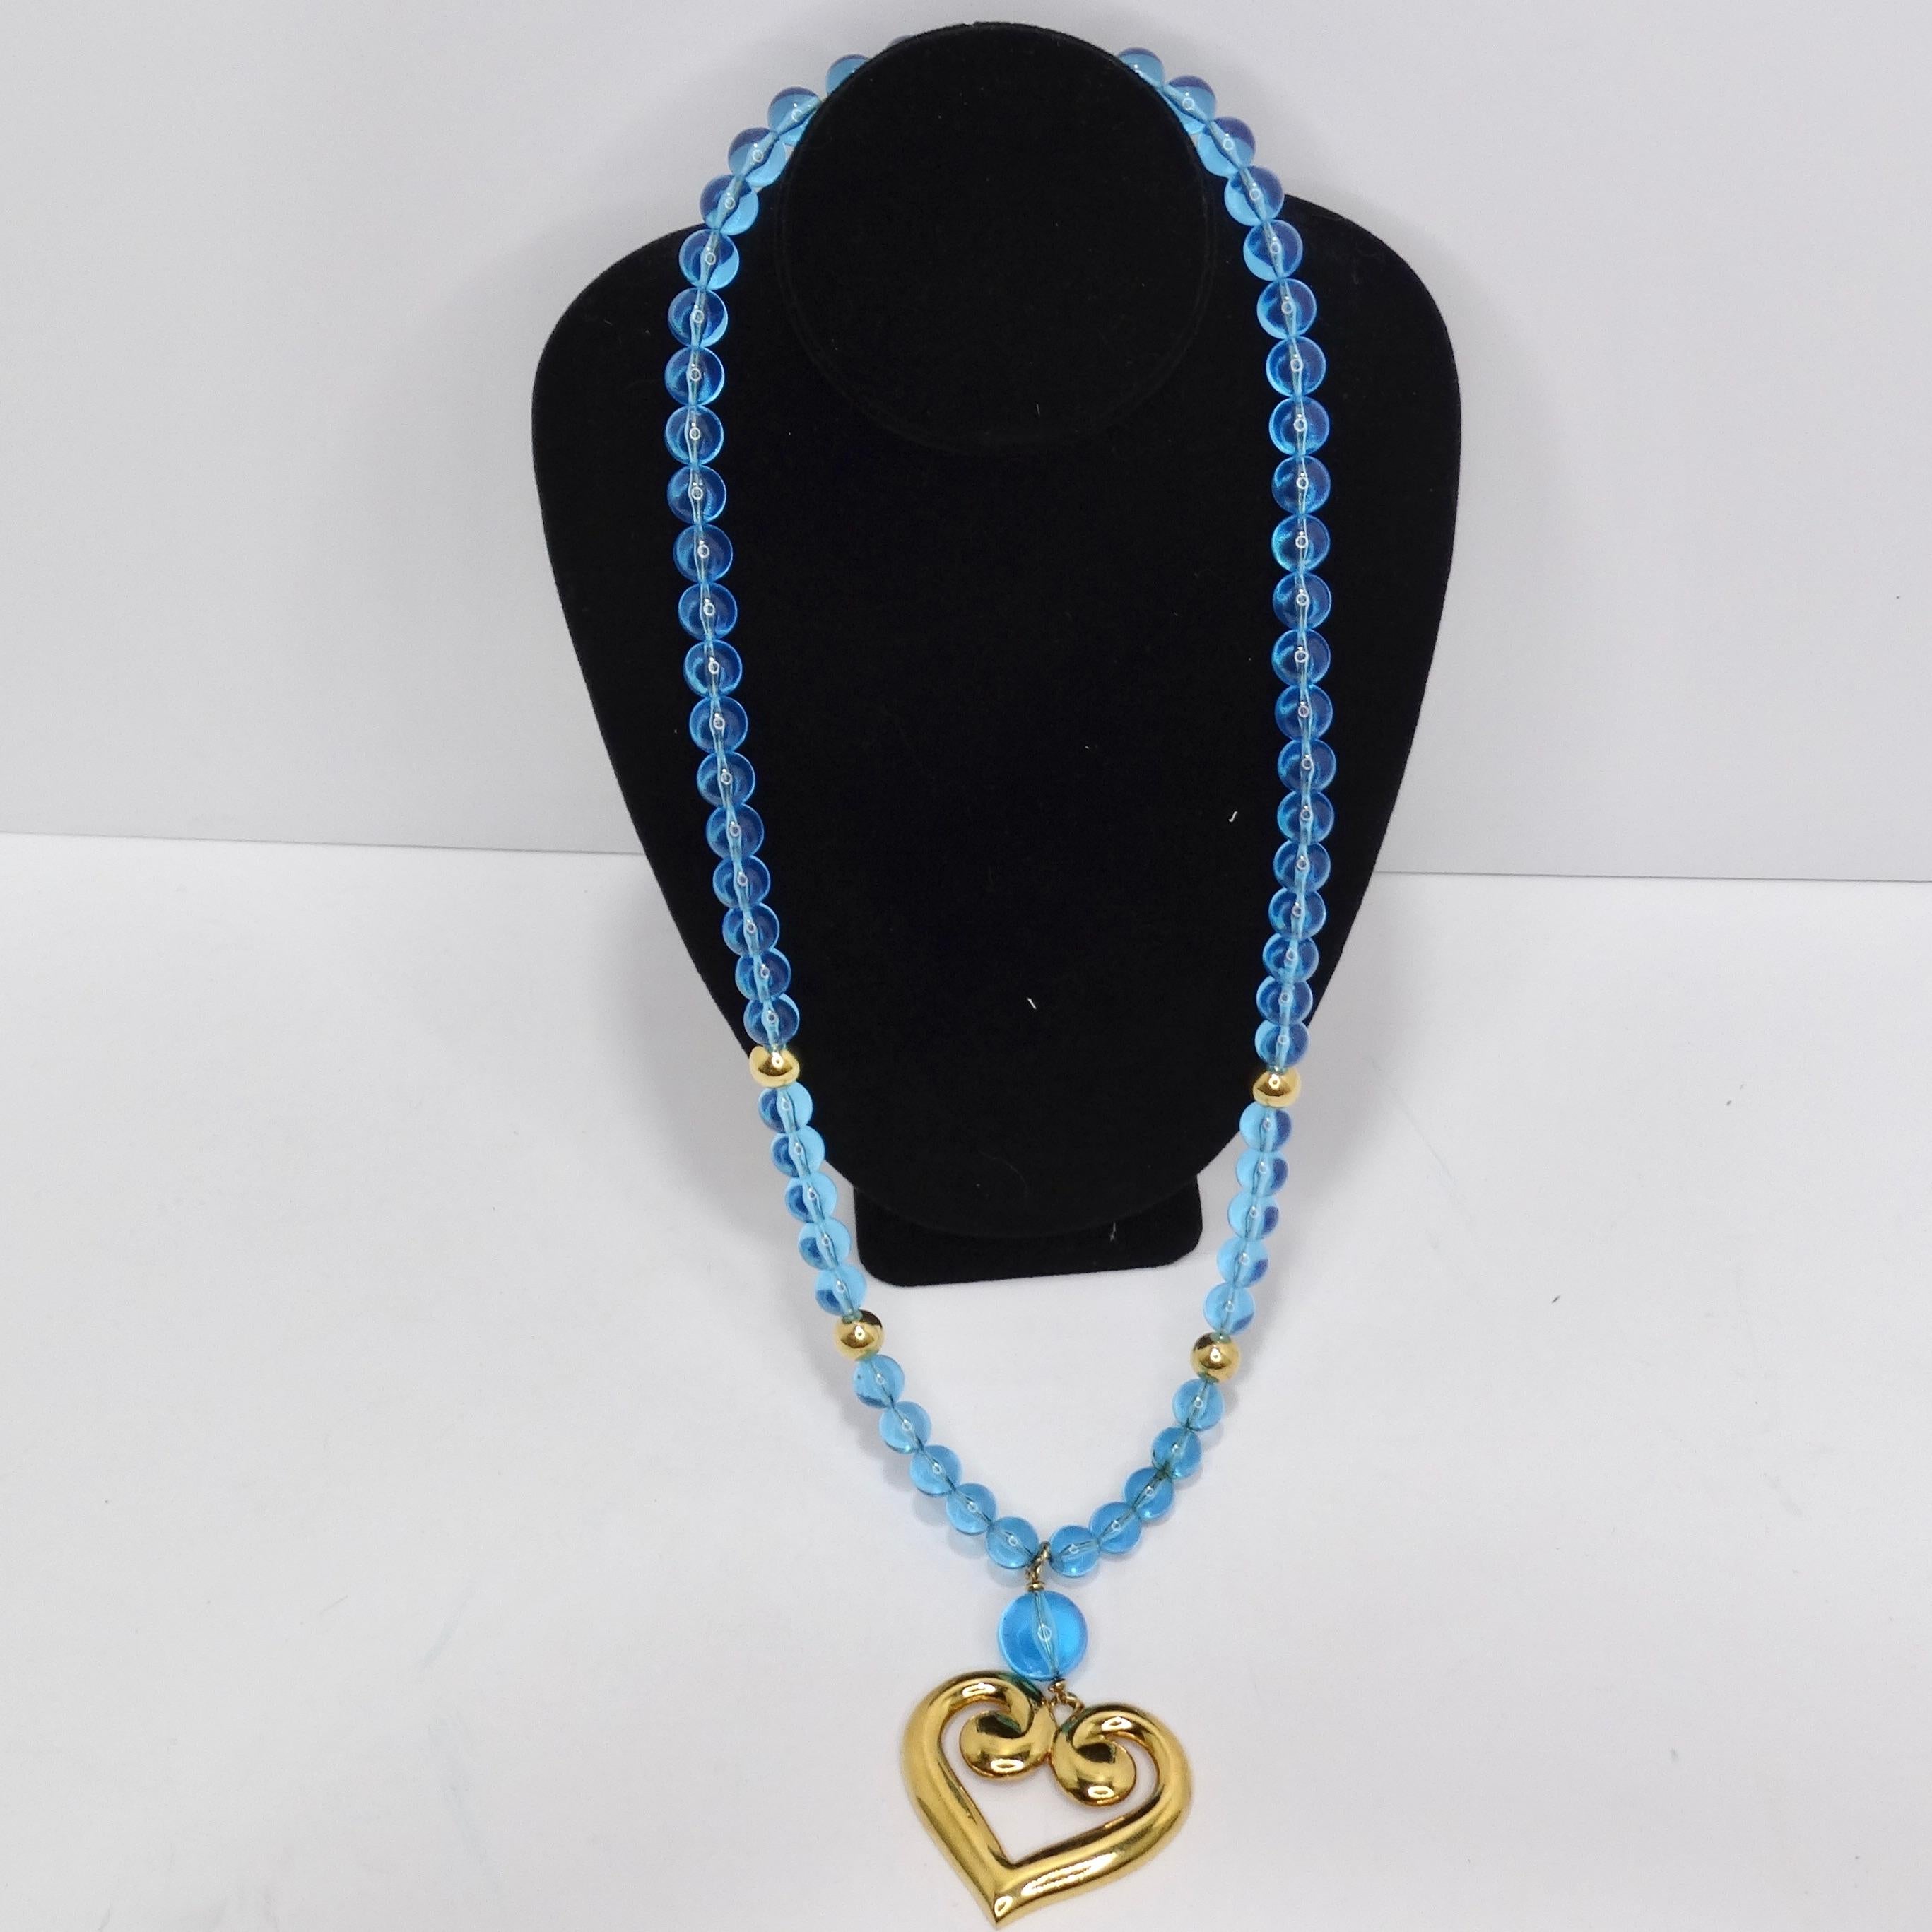 Lassen Sie sich von der lebhaften Anziehungskraft der 1980er Jahre mit unserer fesselnden Napier 18K Gold Plated Greek Heart Blue Bead Pendant Necklace verzaubern. Diese dramatische und lange Halskette besteht aus einer Vielzahl von elektrisch